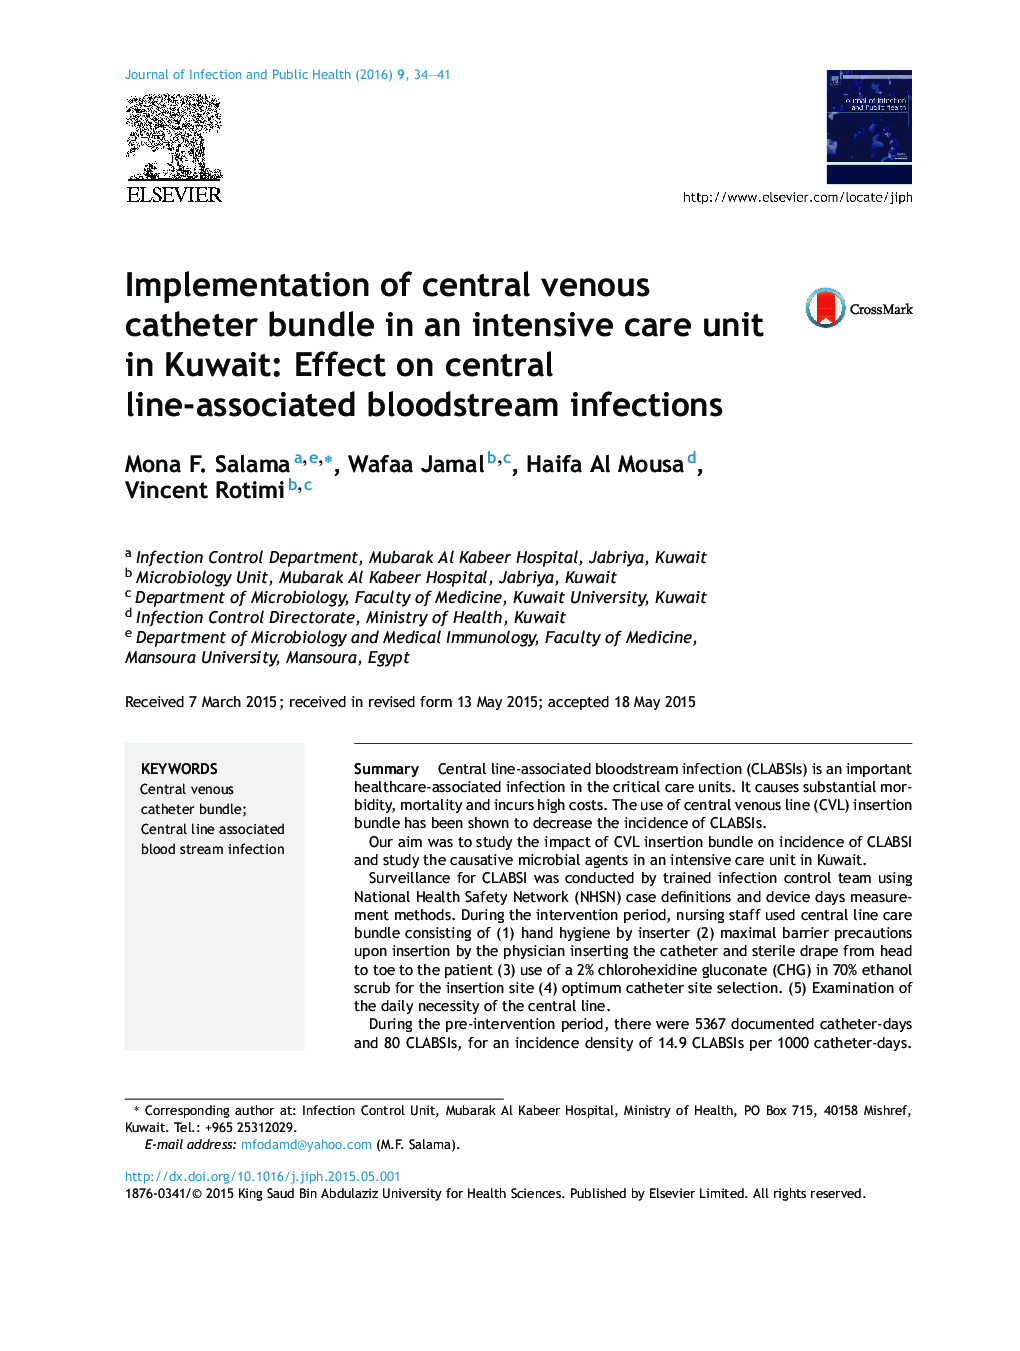 پیاده سازی بسته نرم افزاری کاتتر وریدی مرکزی در یک واحد مراقبت های ویژه در کویت: تأثیر بر عفونت های مرتبط با جریان خون مرکزی